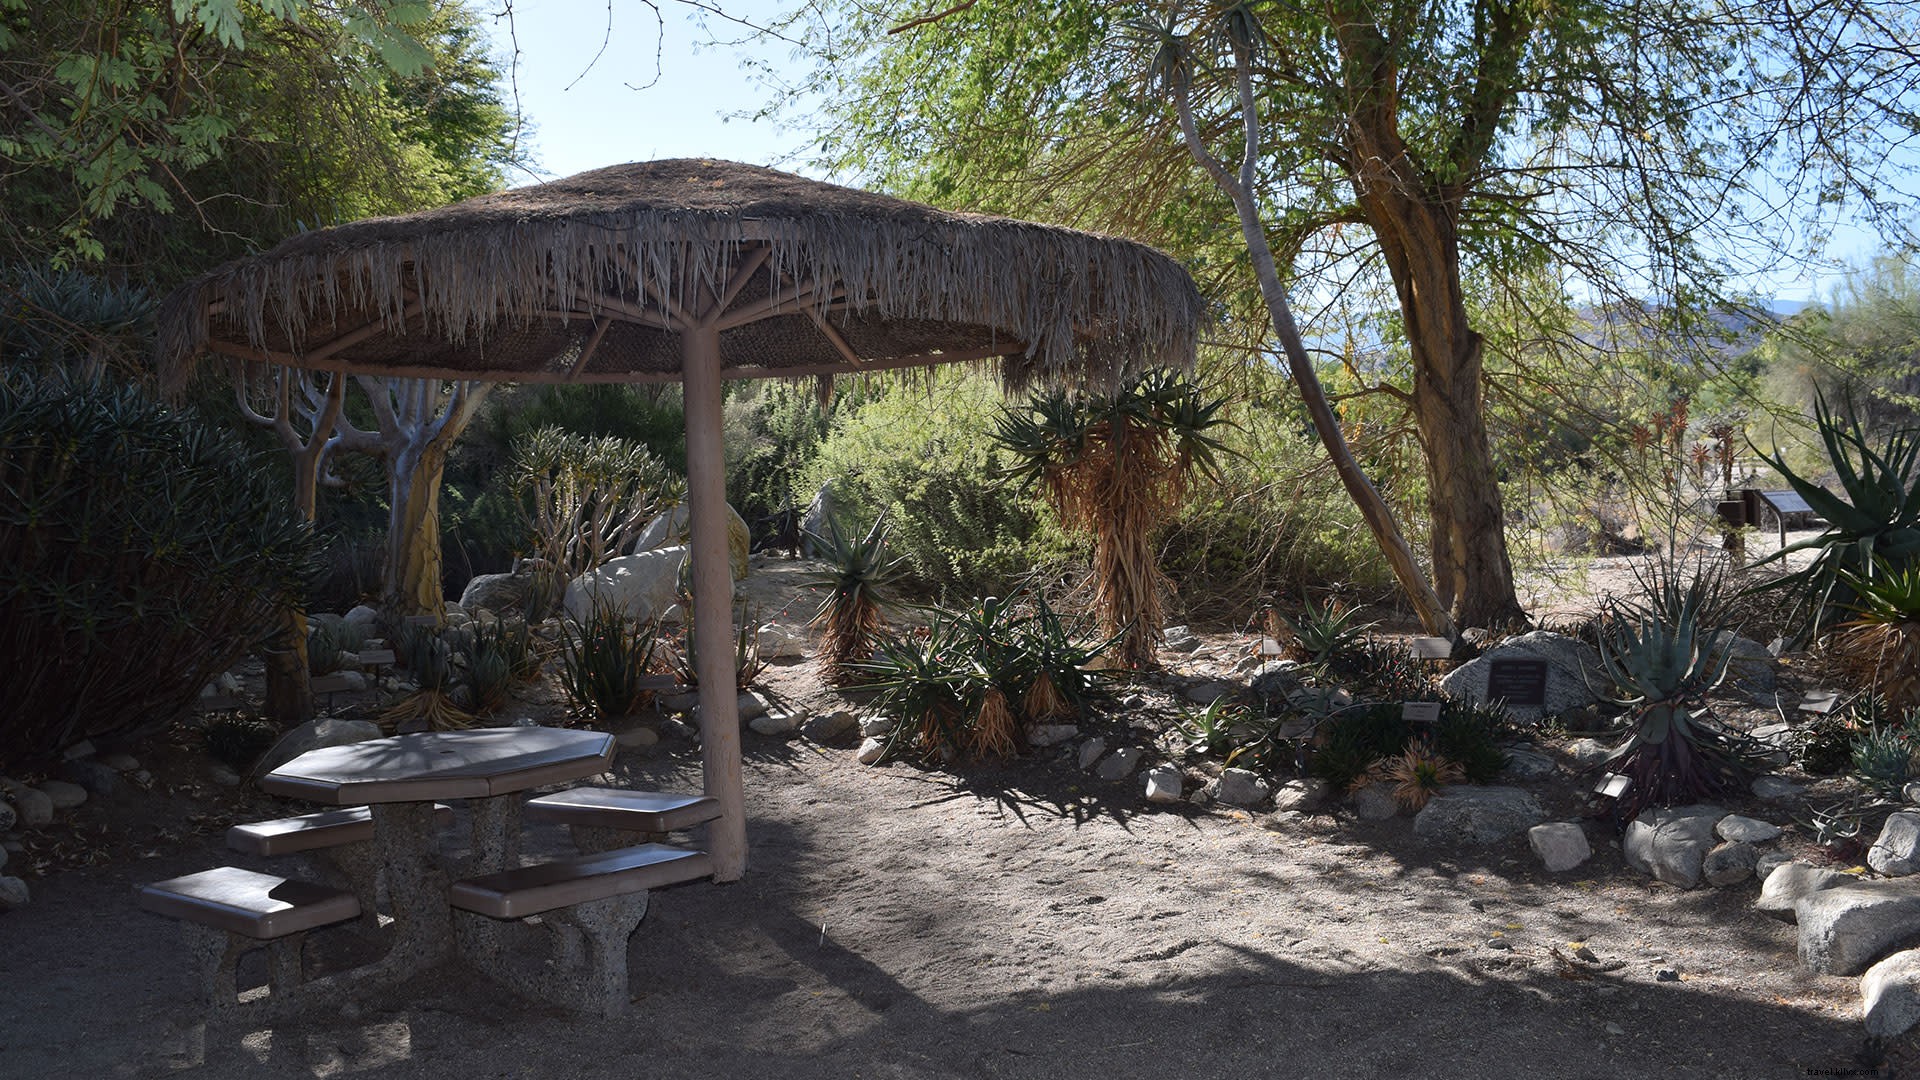 Ótimos lugares para fazer um piquenique e explorar em Greater Palm Springs 